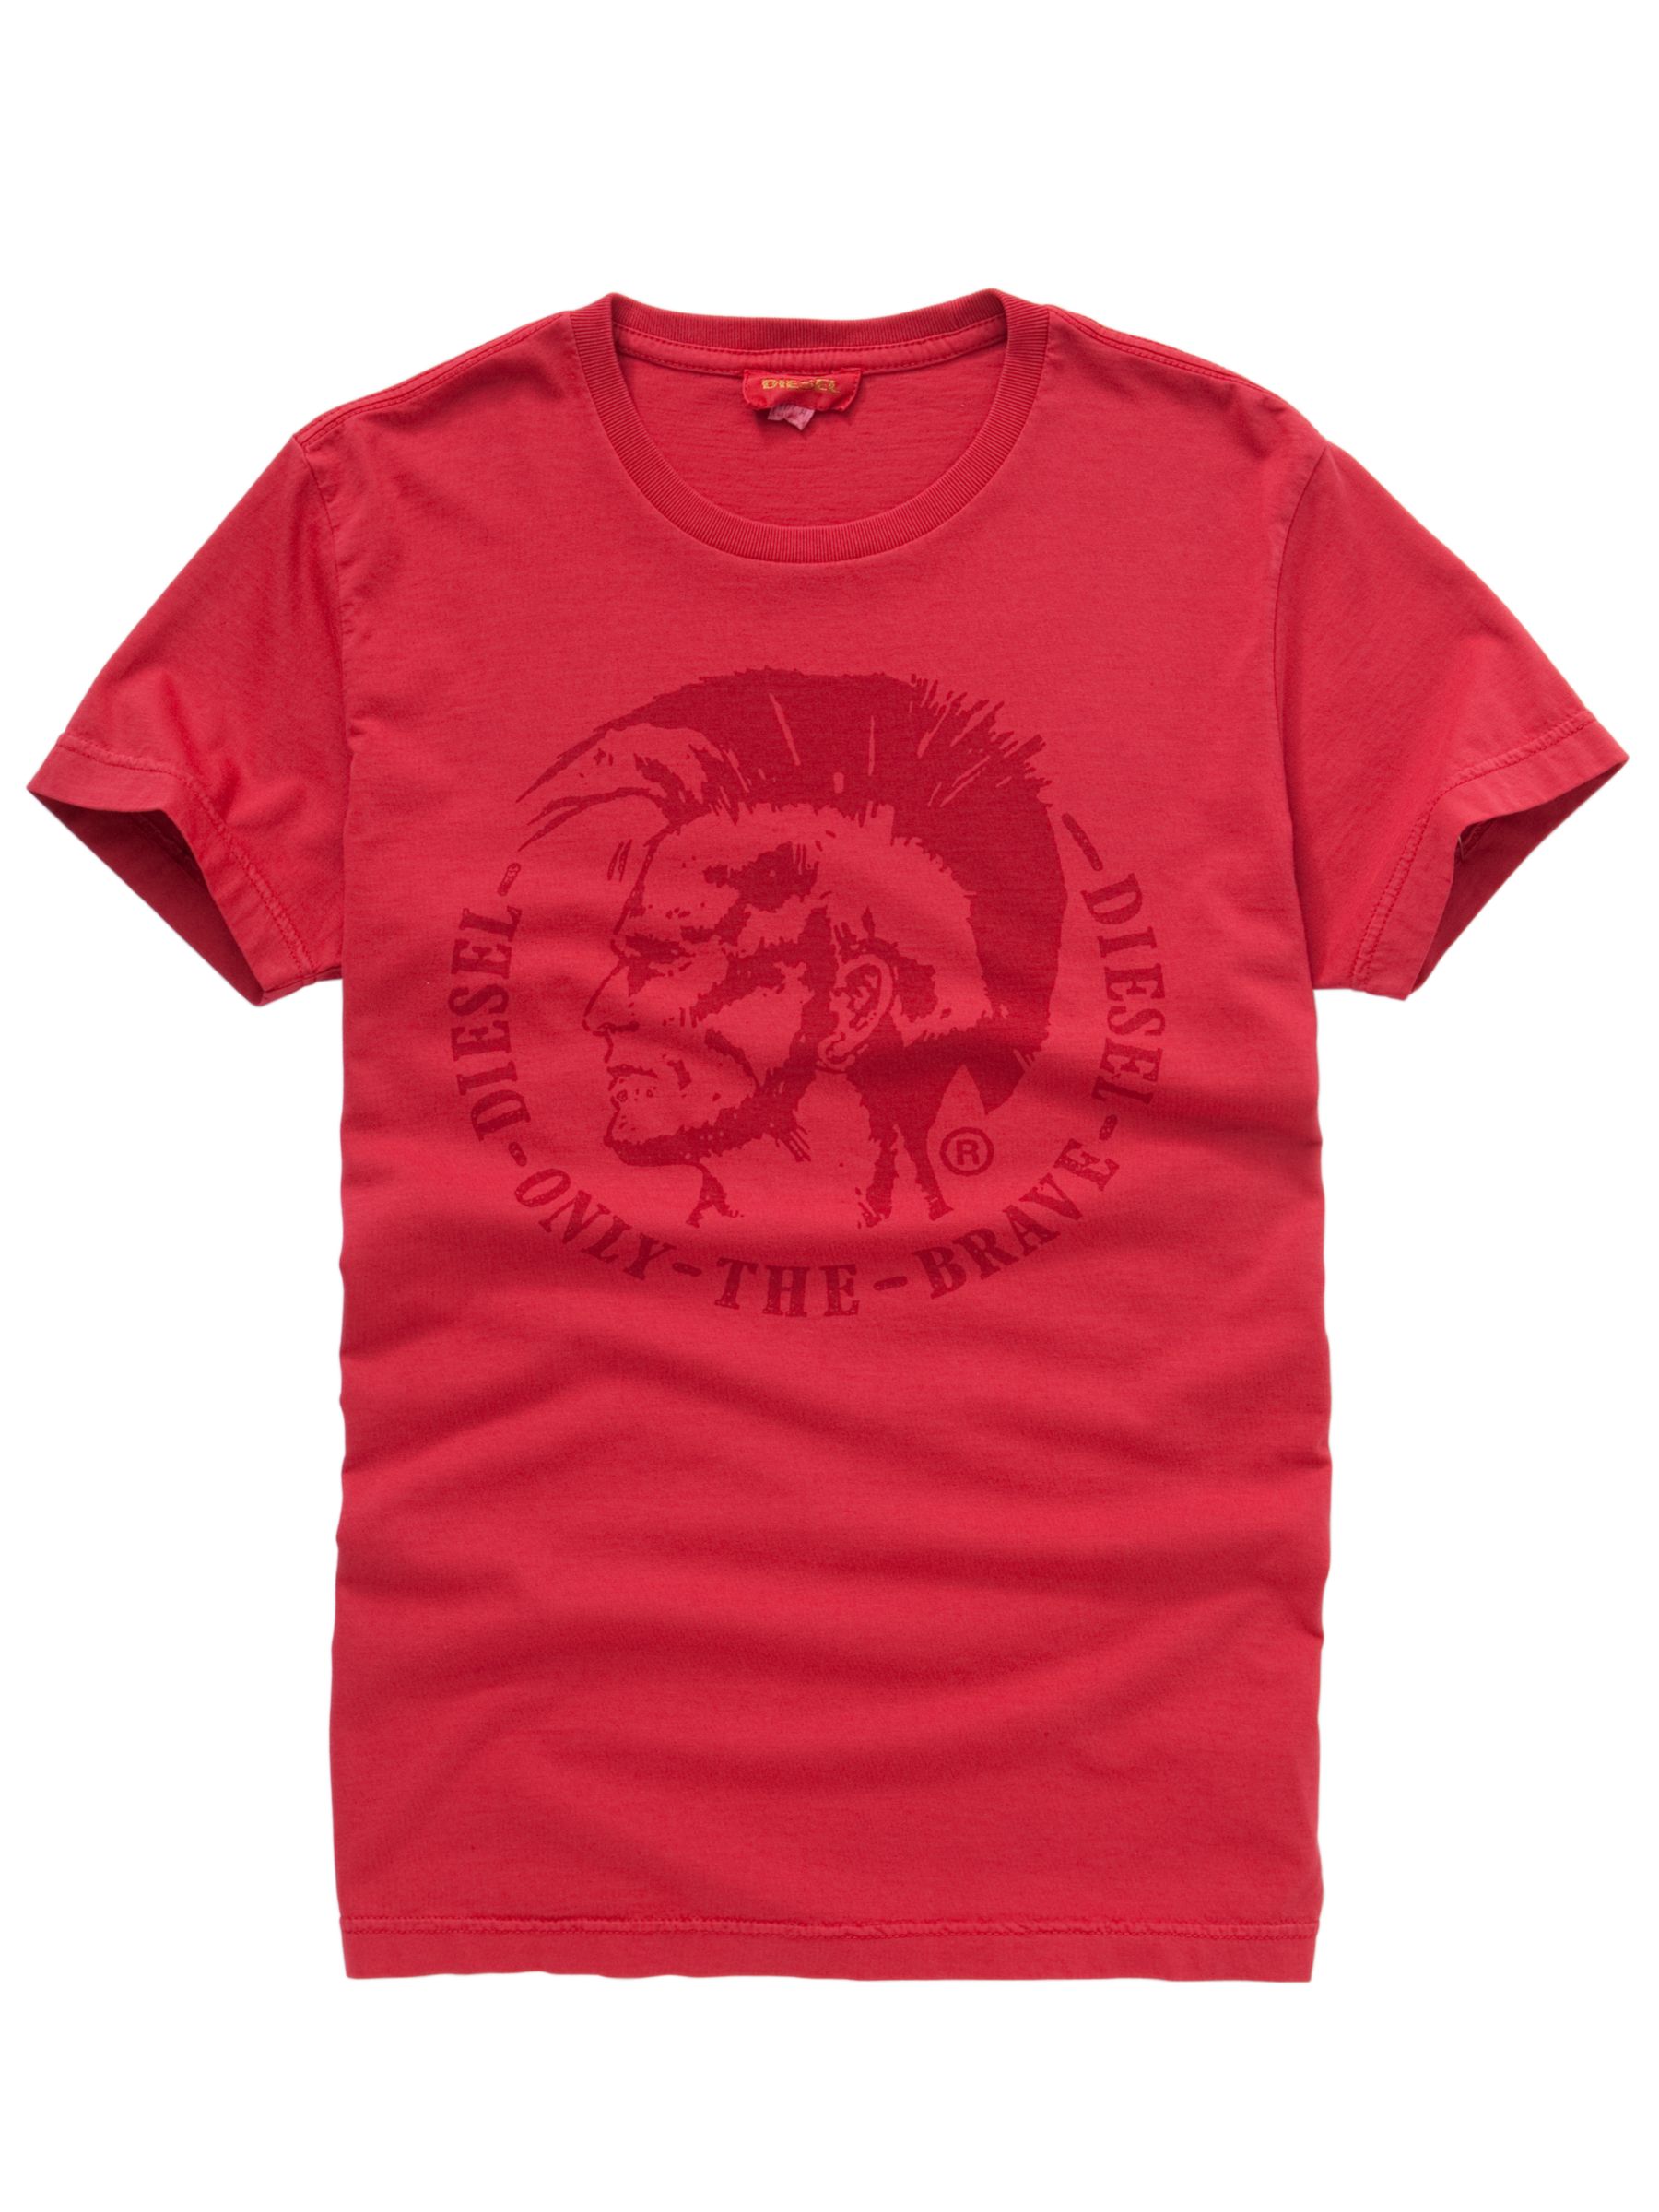 Nana T-Shirt, Red